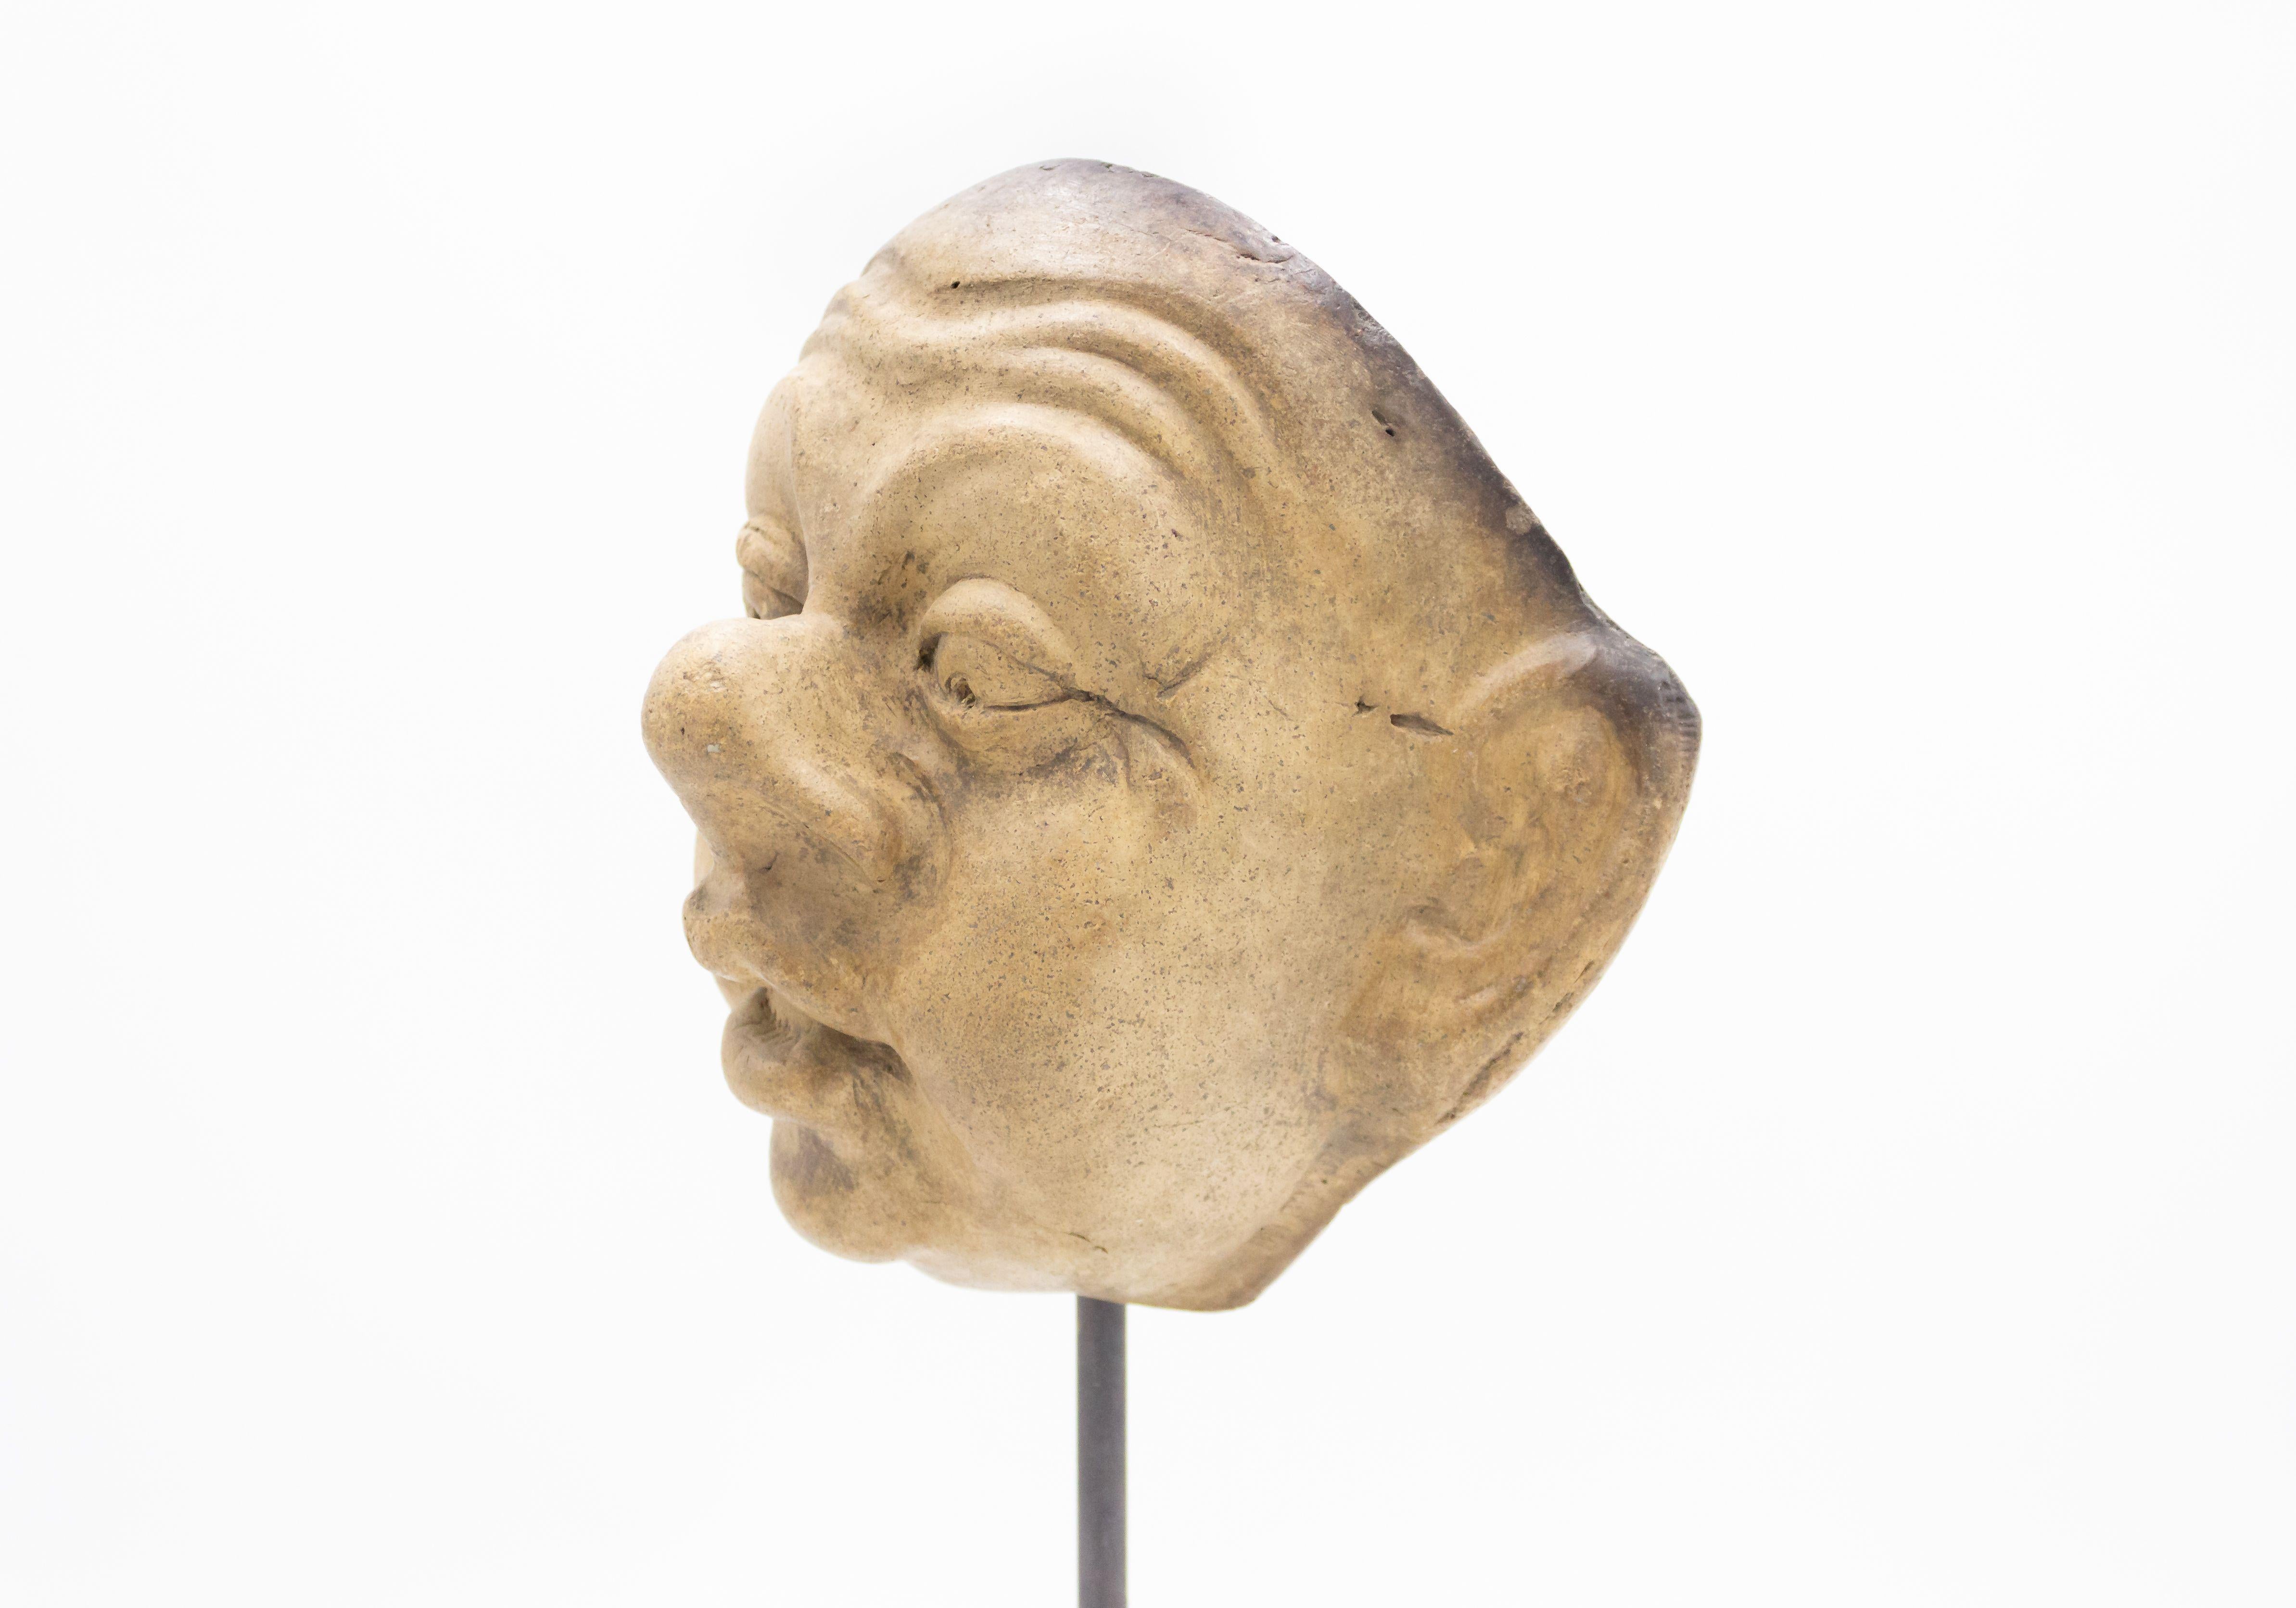 Kontinentaldeutsche (spätes 19. Jh.) Terrakotta-Maskenform eines überrascht dreinblickenden grotesken Gesichts mit großen Ohren und Nase auf einem quadratischen schwarzen Marmorsockel (Teil einer 39-teiligen Sammlung).
    